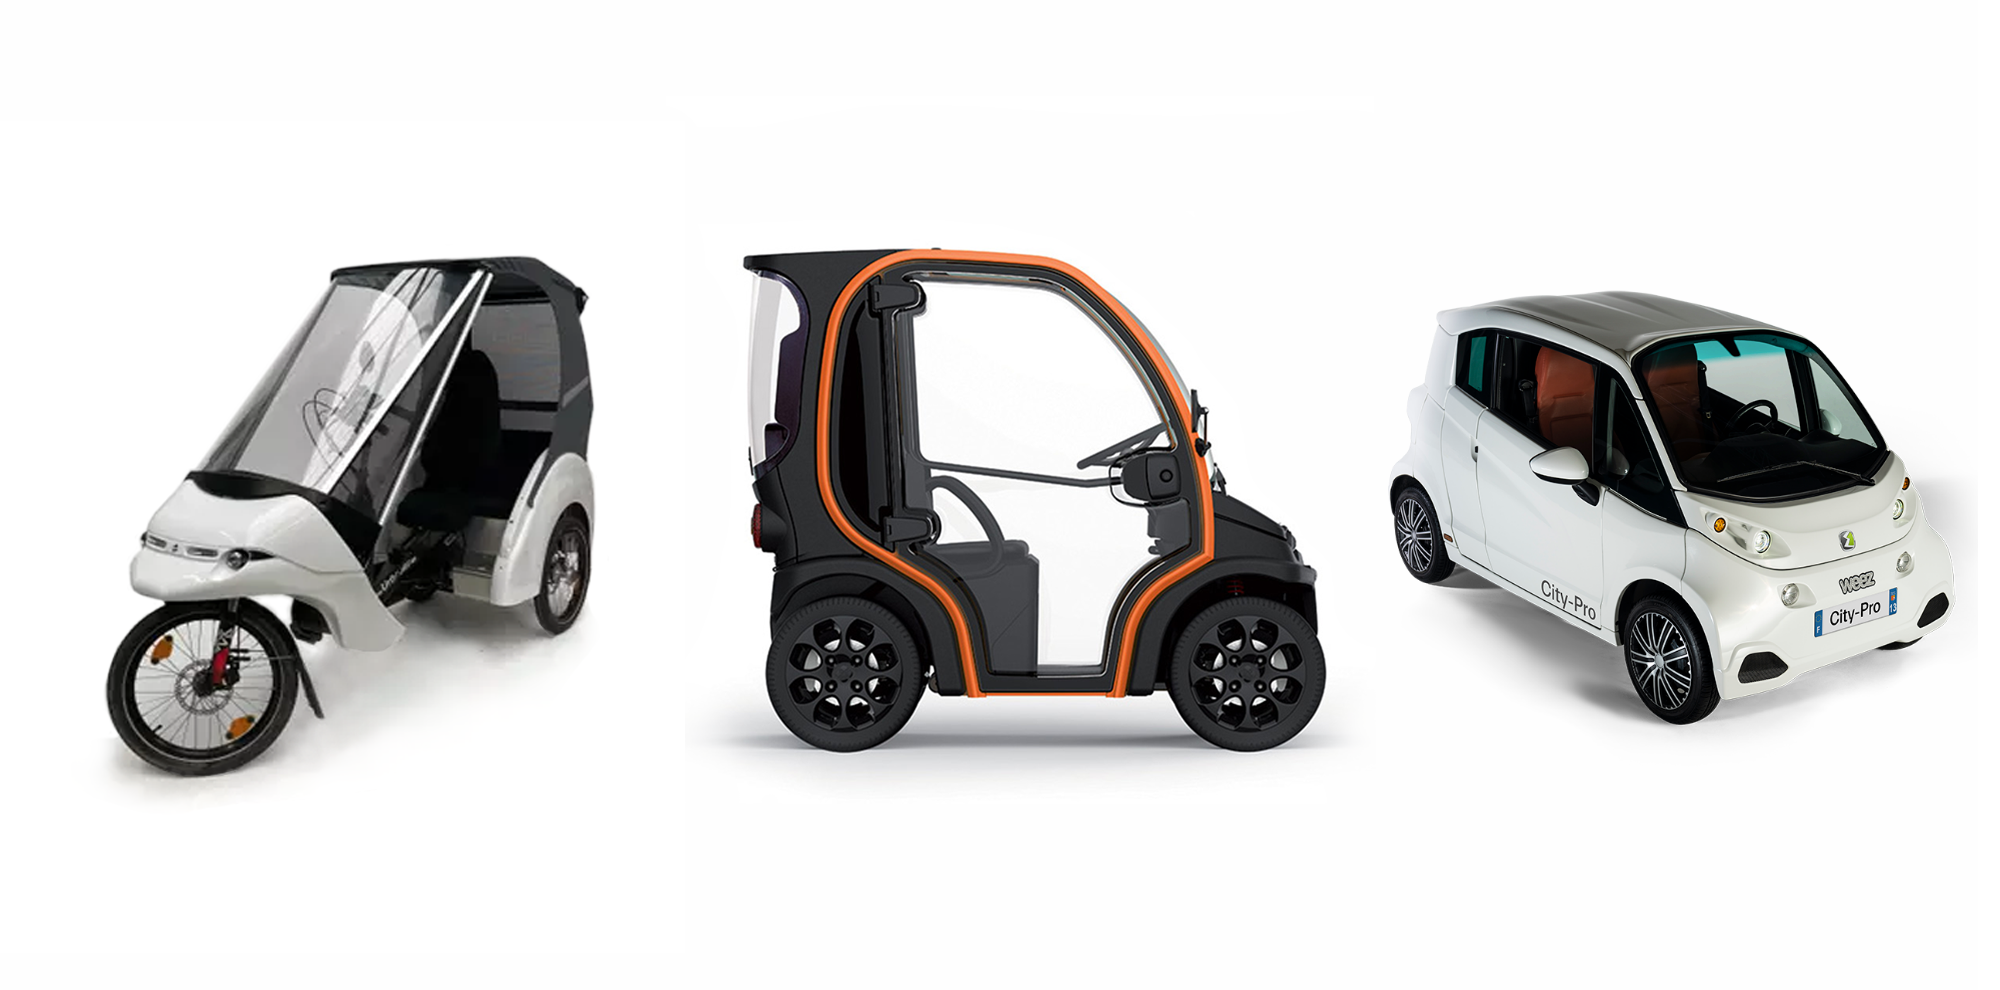 Les trois véhicules intermédiaires expérimentés sur notre territoire : un tricycle à assistance électrique, une micro-voiture et une mini-voiture électriques. Photo : DR